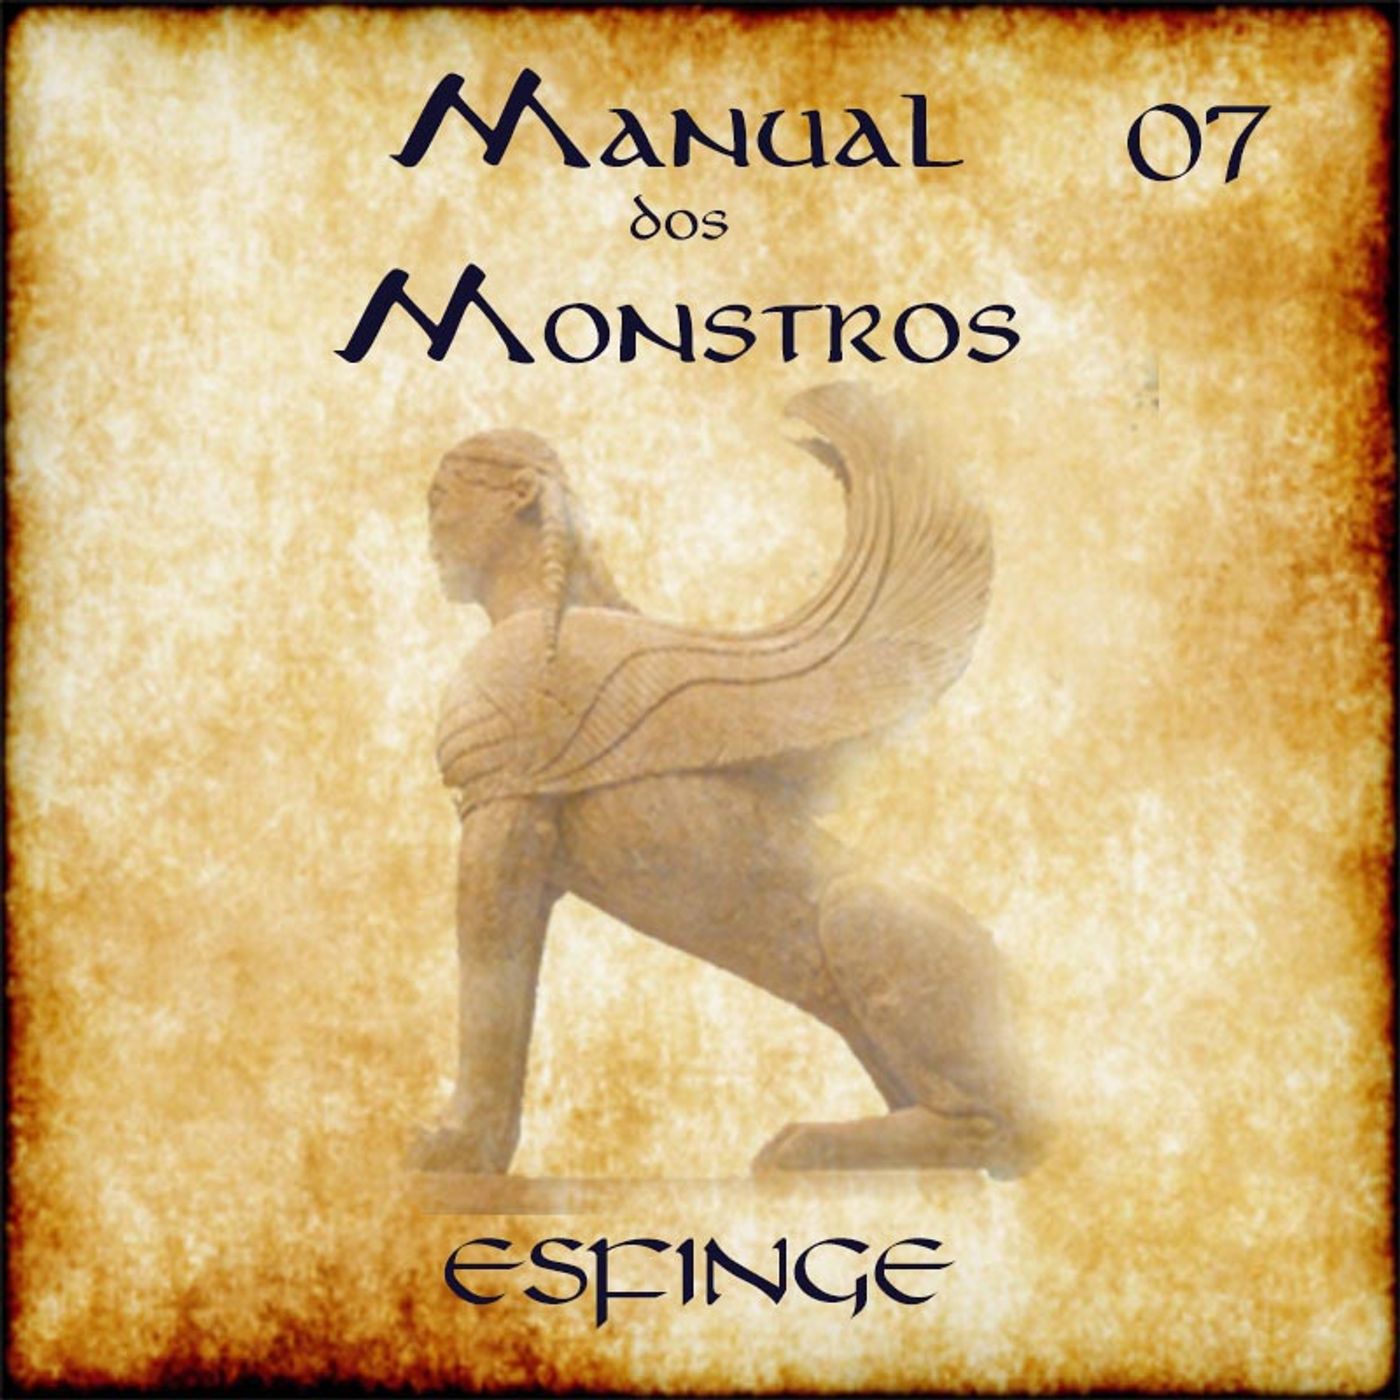 Manual dos Monstros #07 – Esfinge